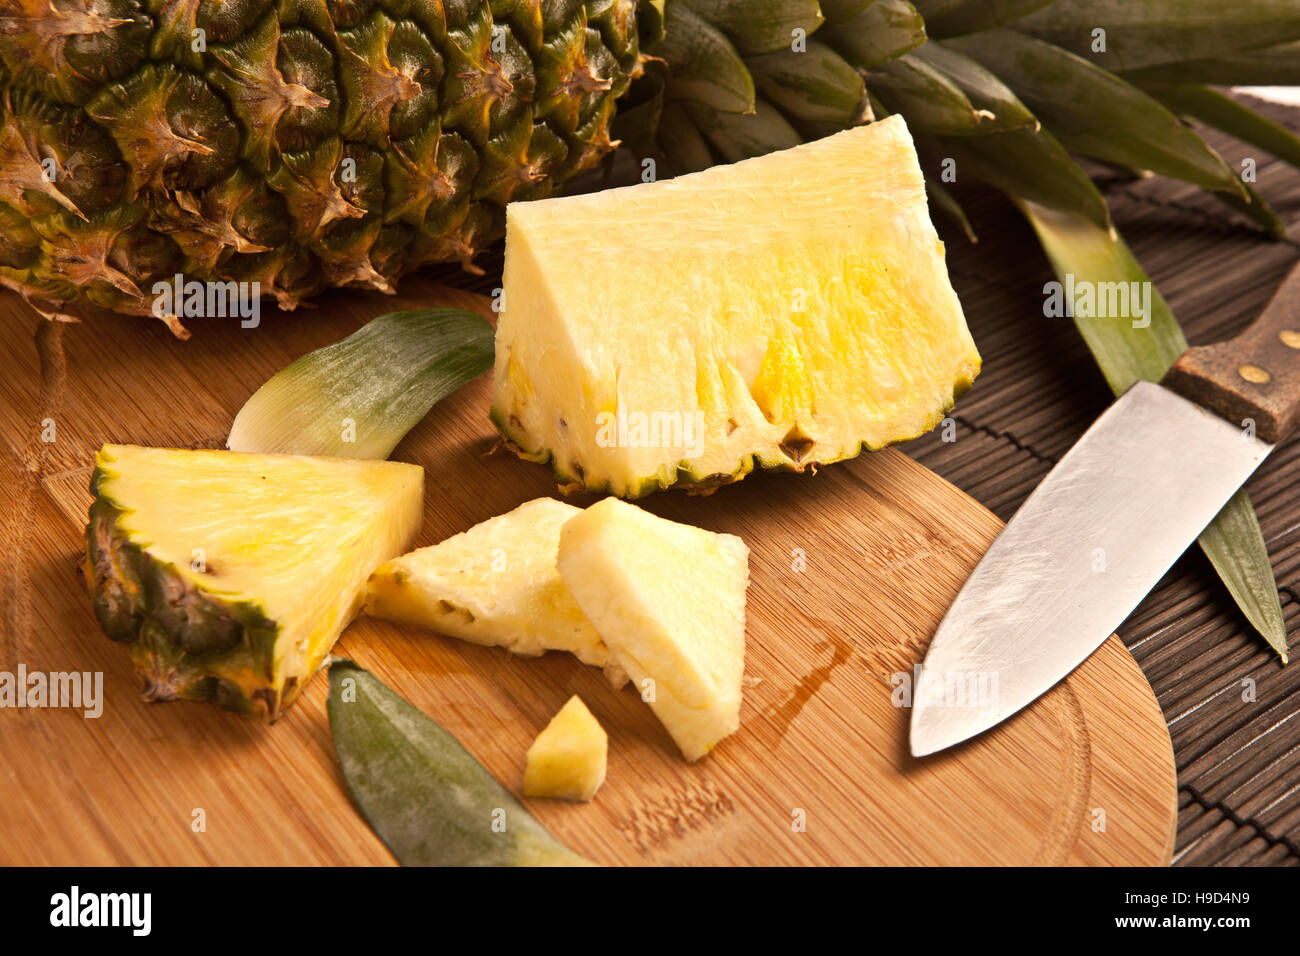 Ananas tranche fraîche sur une planche en bois Banque D'Images